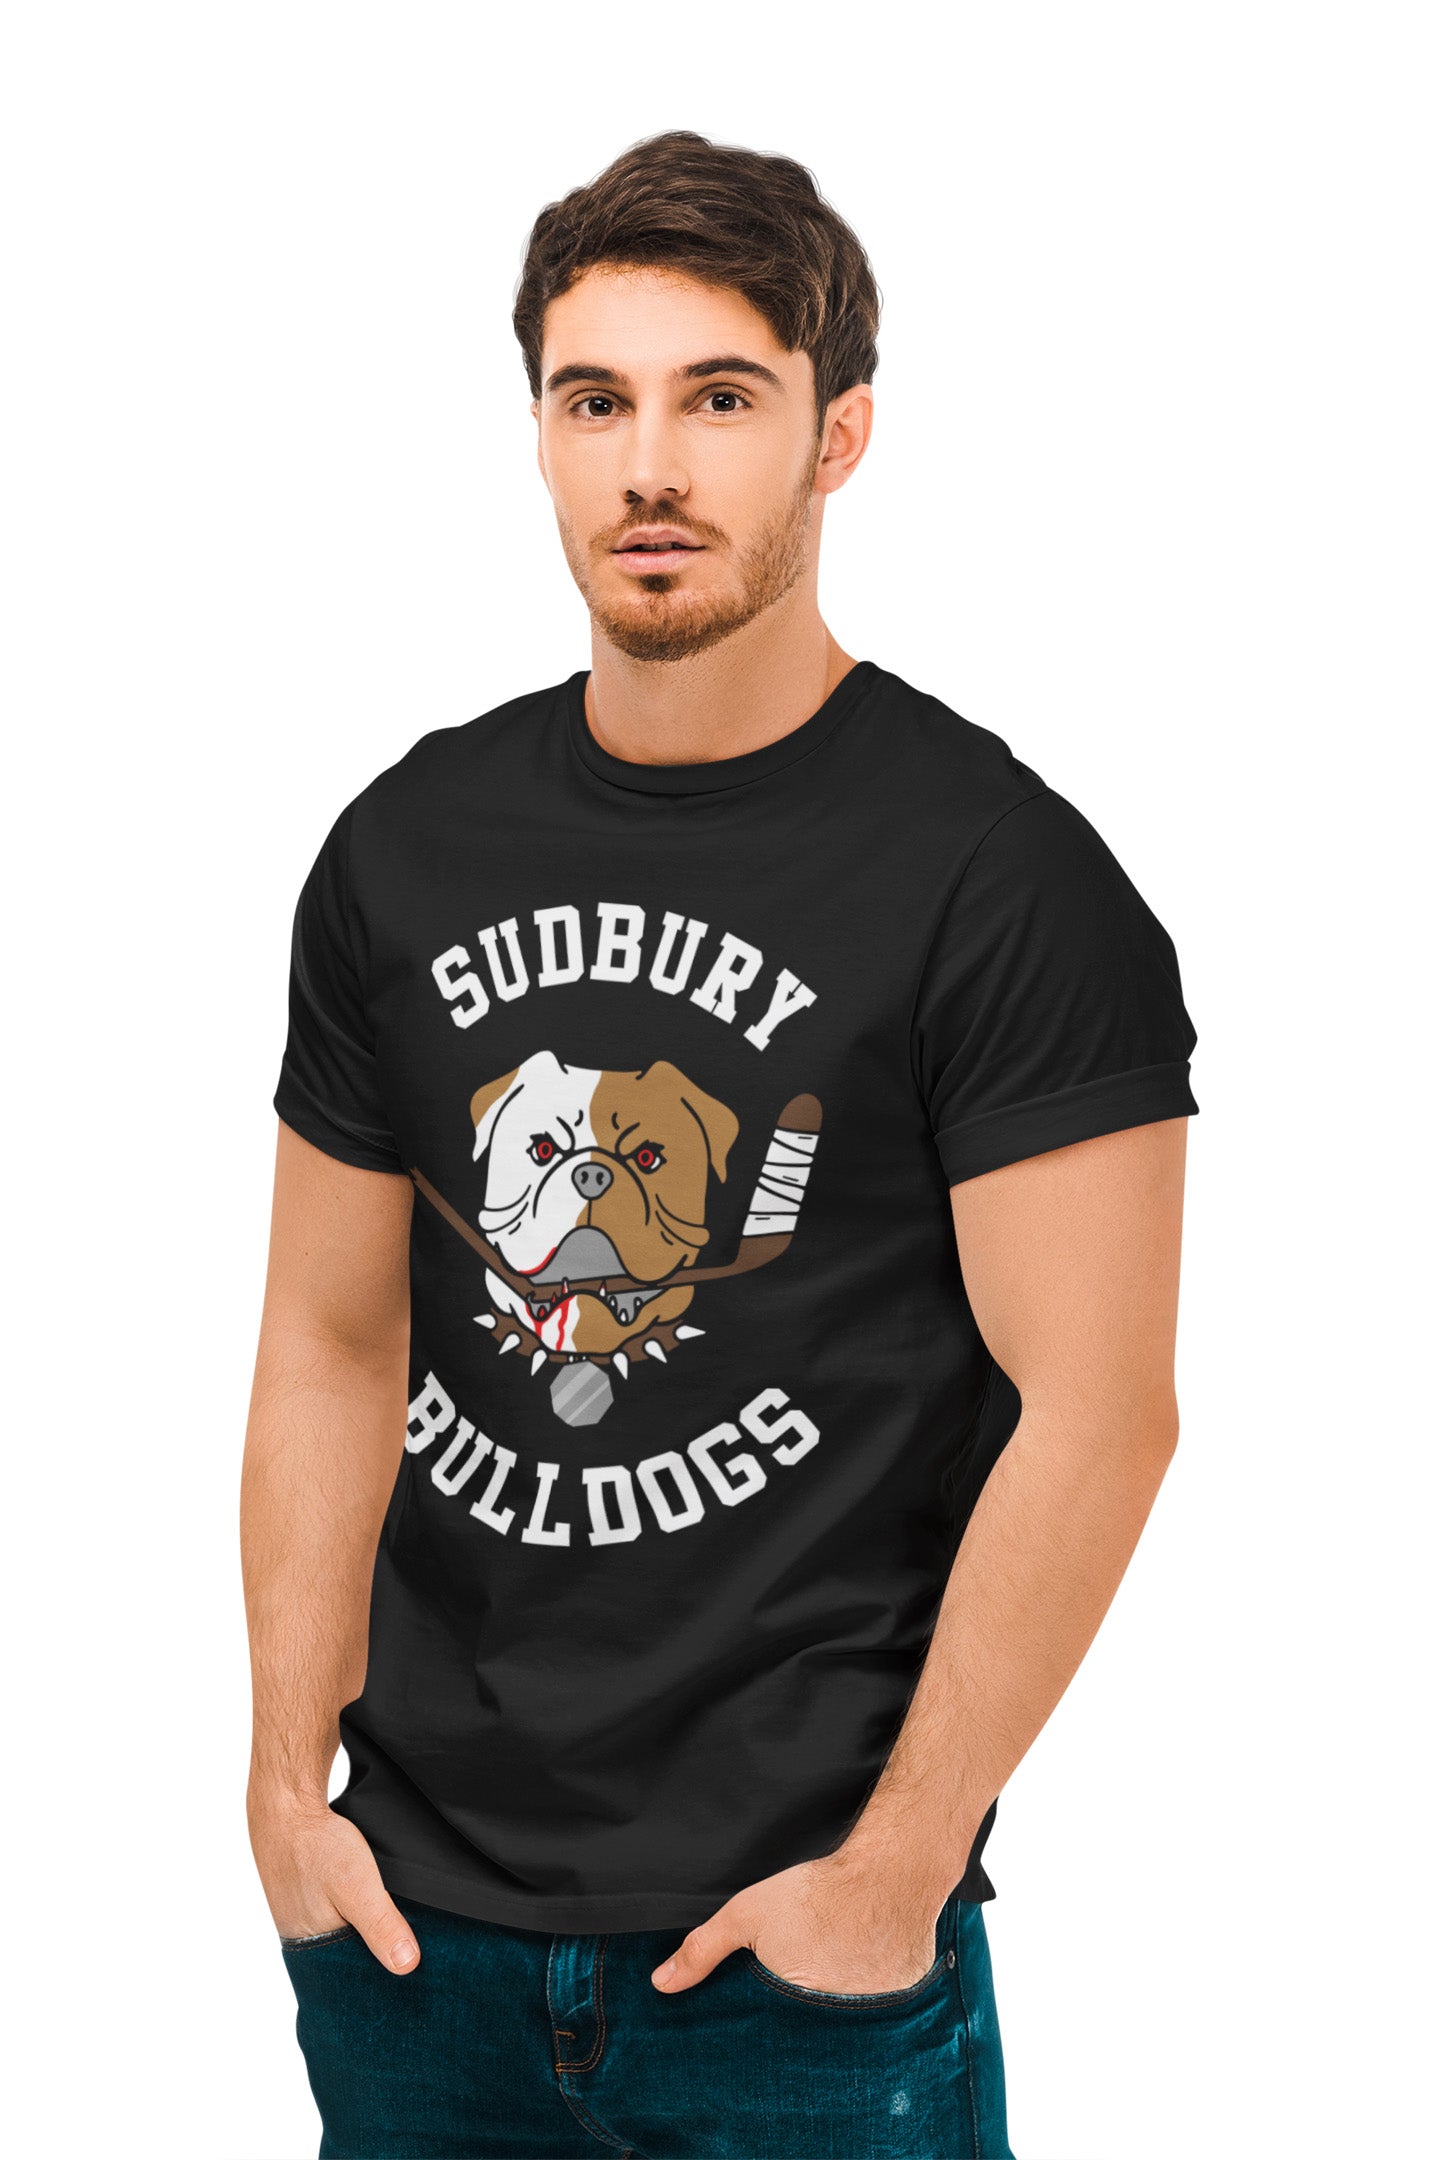 Sudbury Bulldogs - Hoodie - Absurd Ink